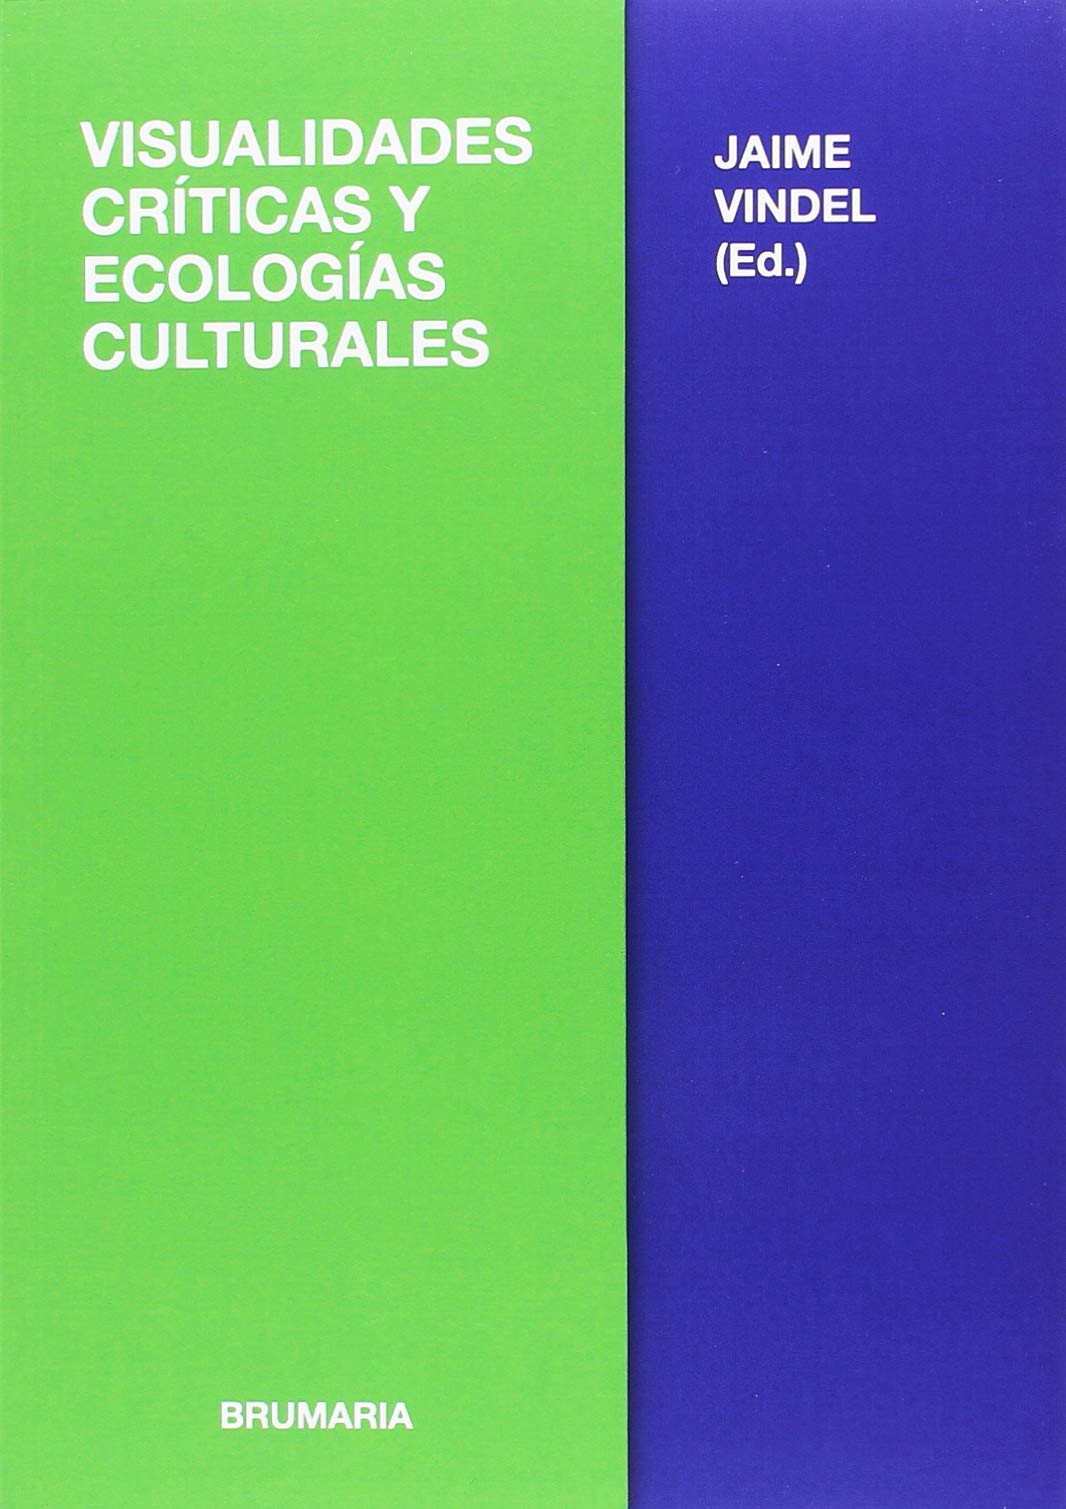 Imagen de portada del libro Visualidades críticas y ecologías culturales